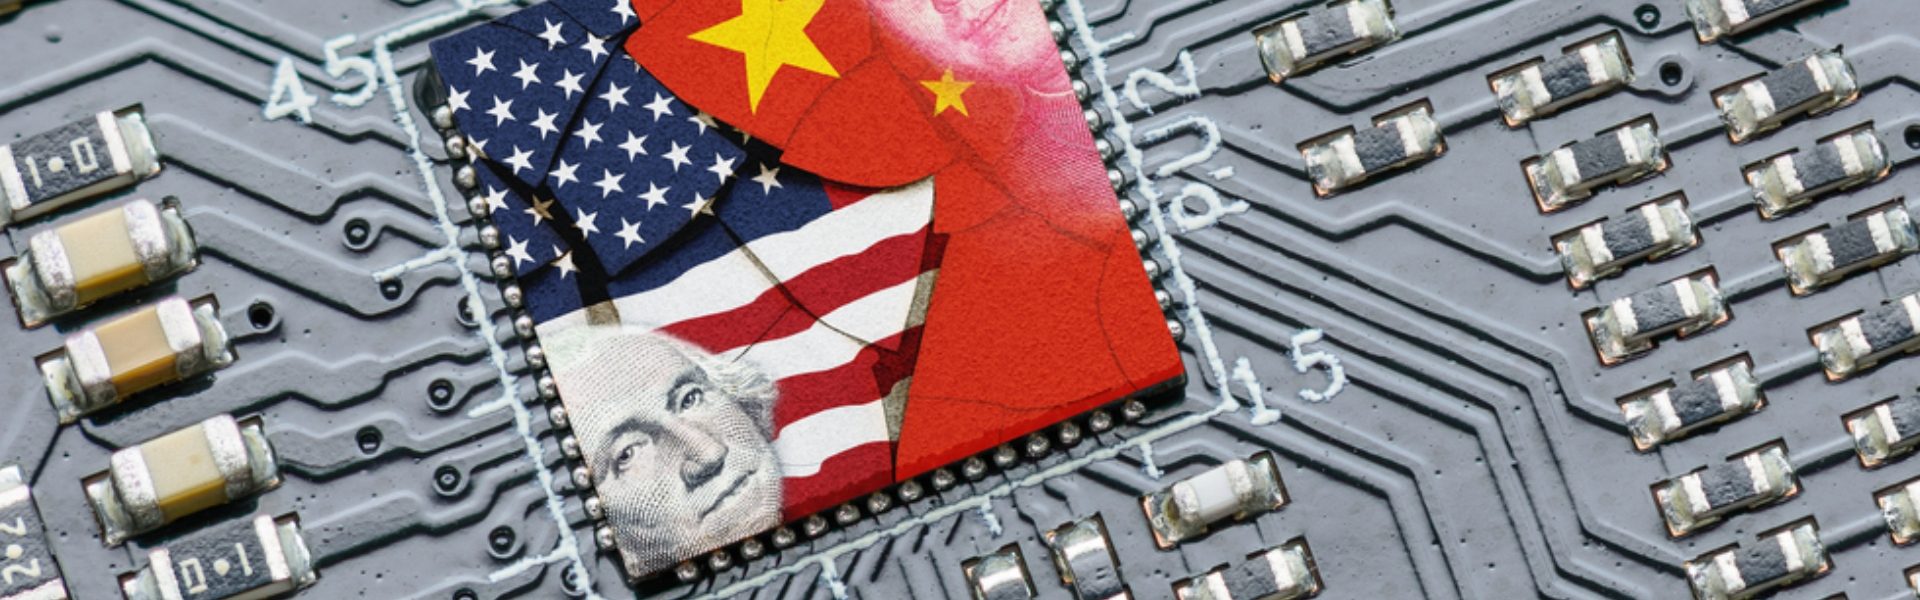 GUERRA DE CHIPS: China vs EEUU! 